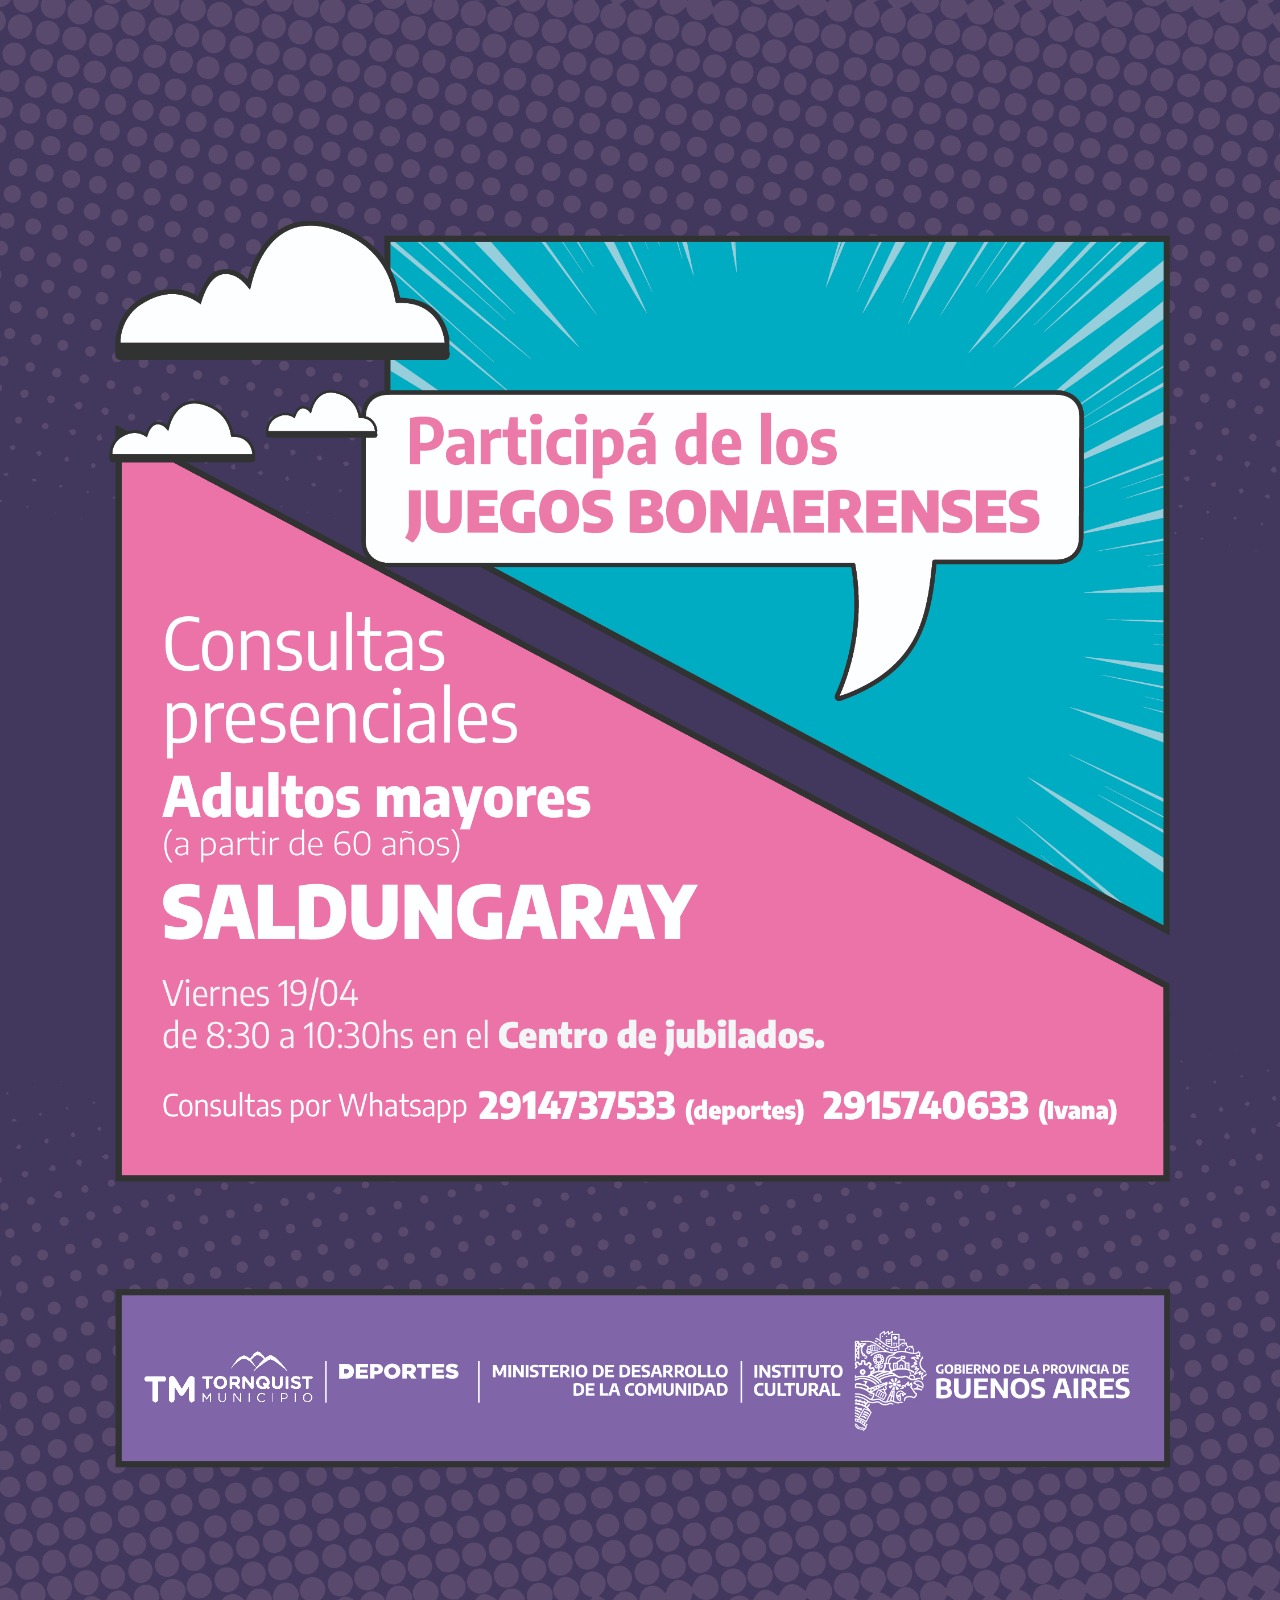 Juegos Bonaerenses: Consultas presenciales para adultos mayores